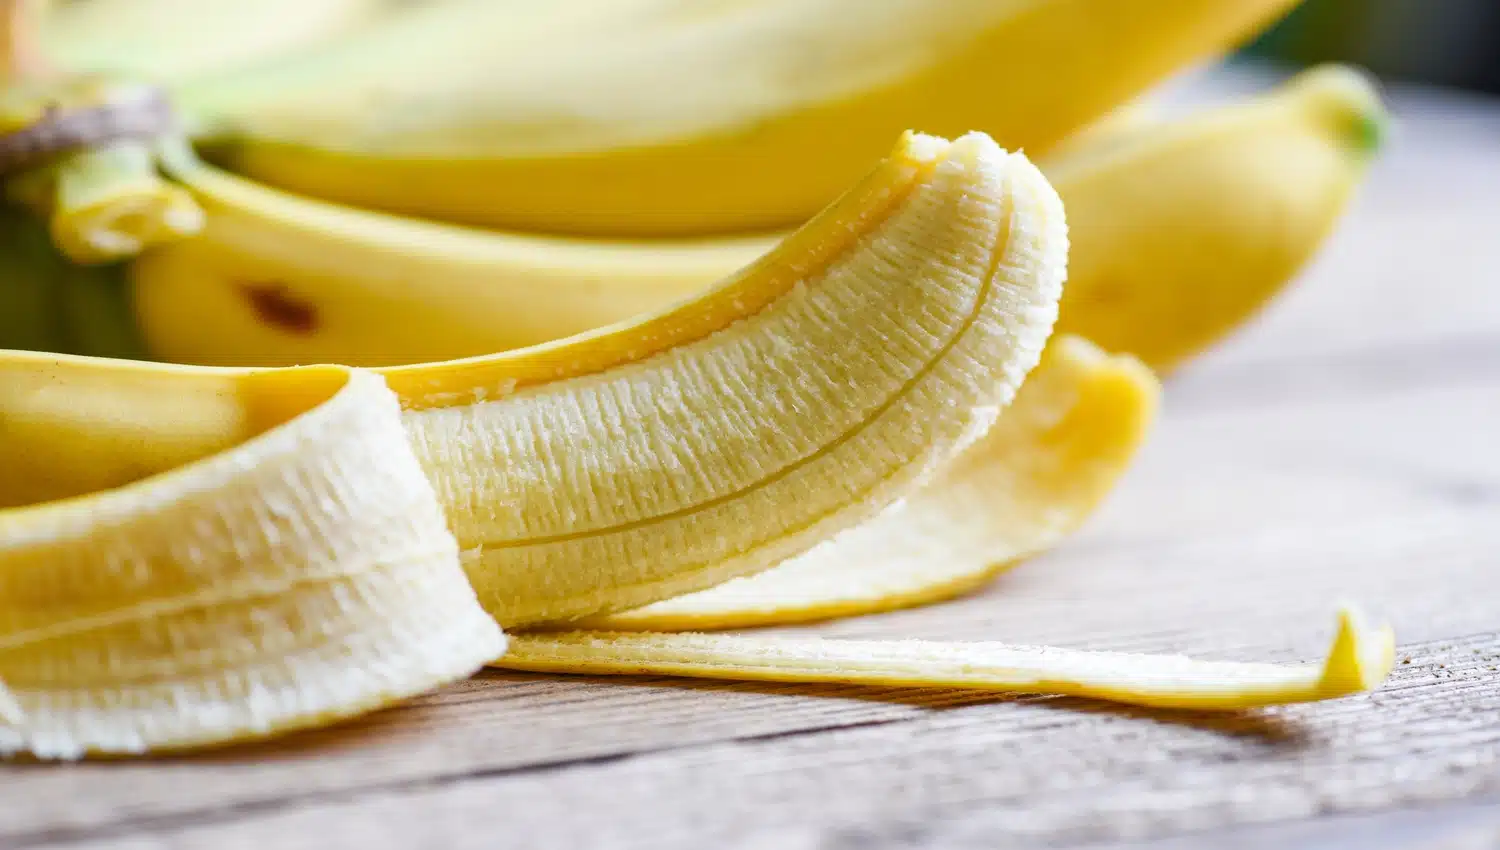 Mitos e Verdades : conheça os múltiplos benefícios da banana - RecordTV -  R7 Domingo Espetacular